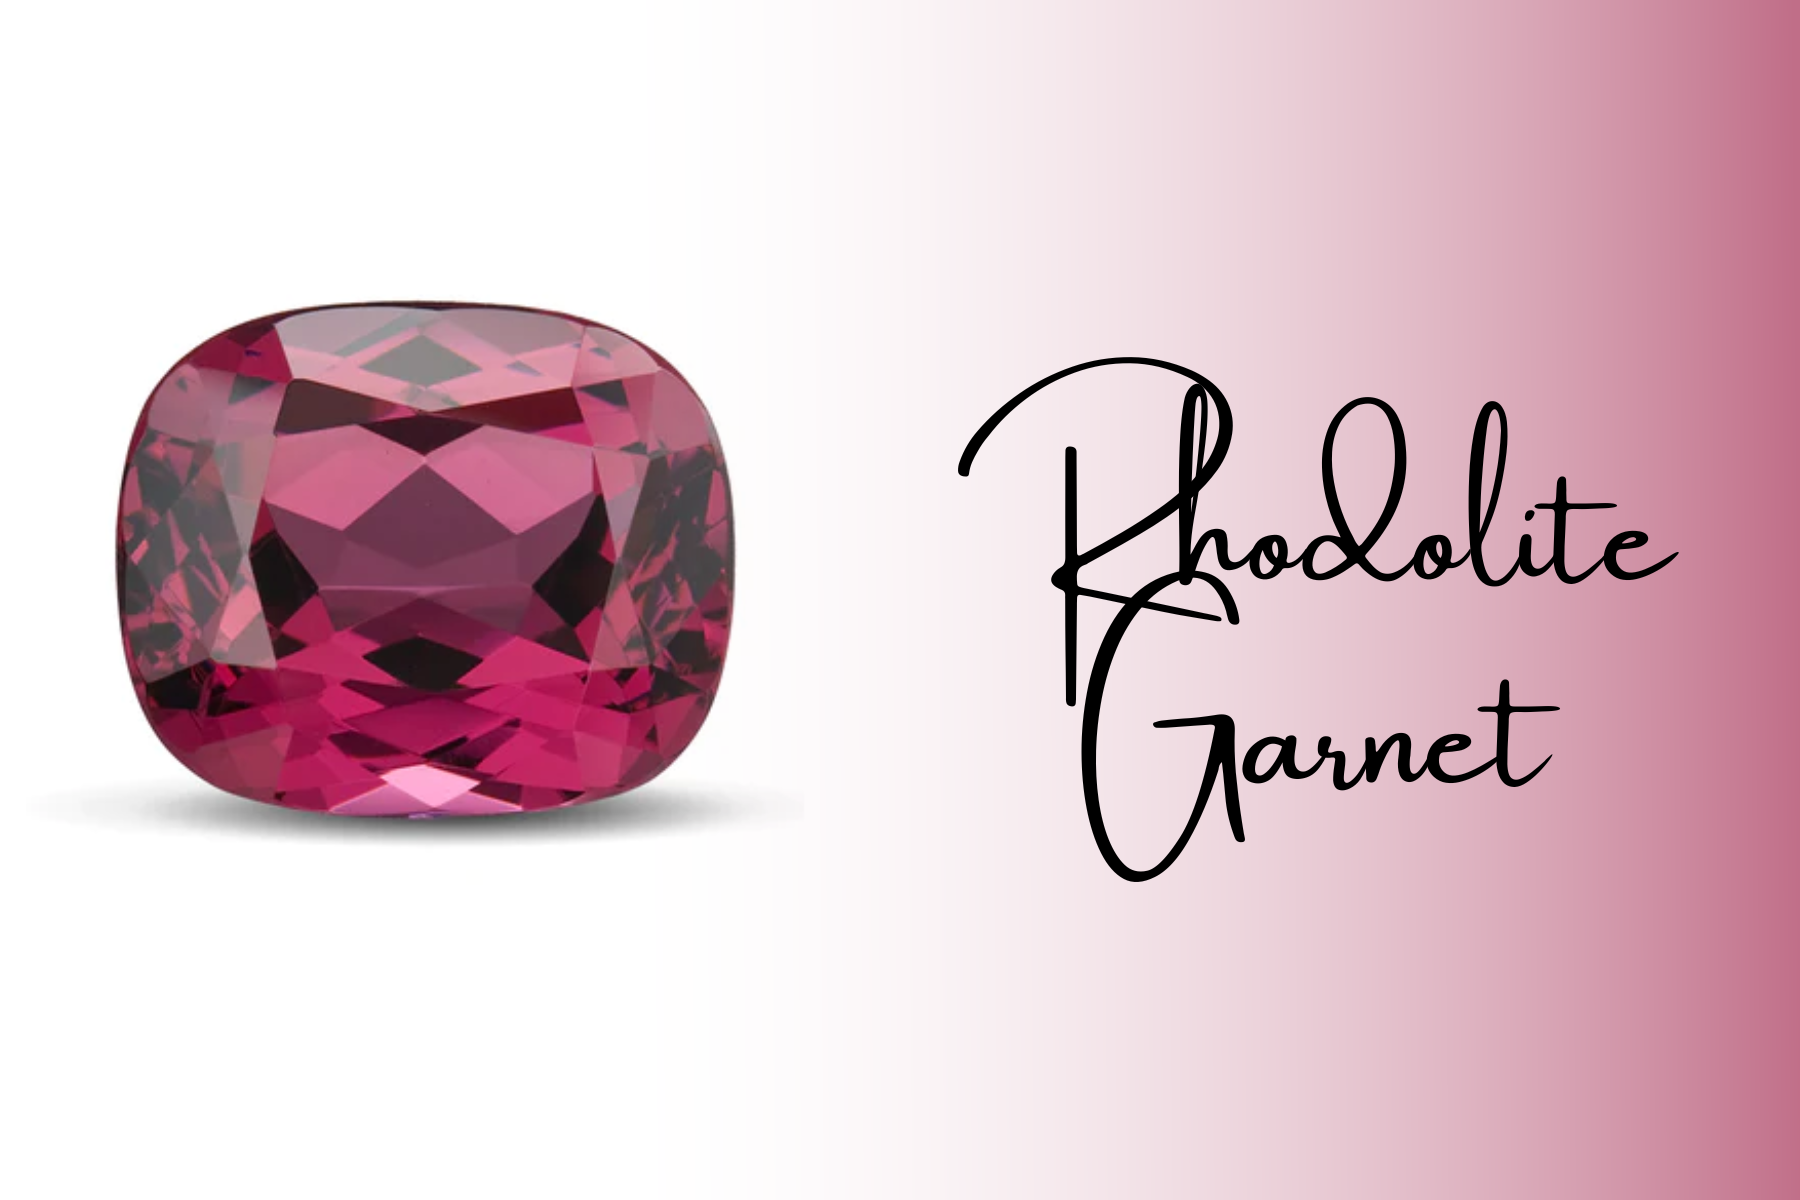 A smooth-cornered deep pink rhodolite garnet